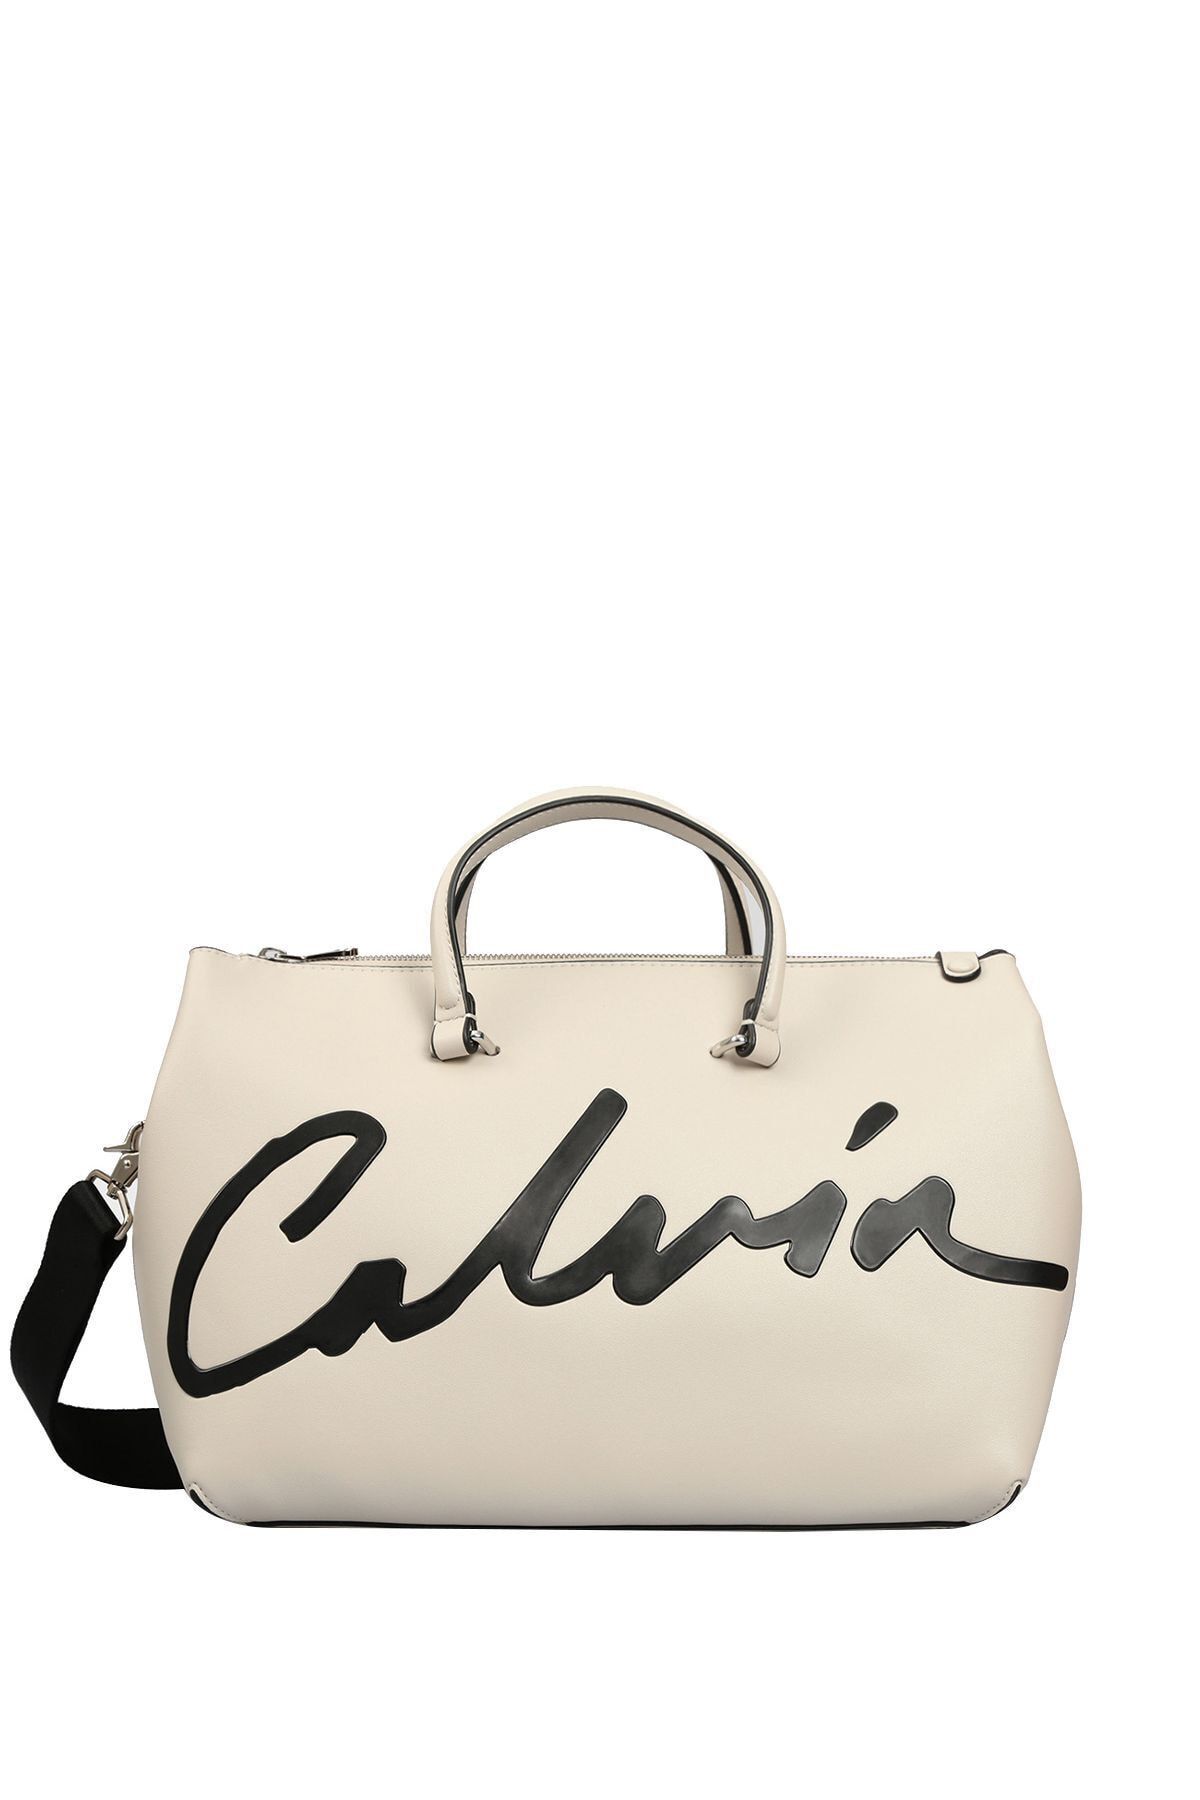 Calvin Klein Kadın Ckj Sculpted Satchel Kadın El Çantası K60k606575